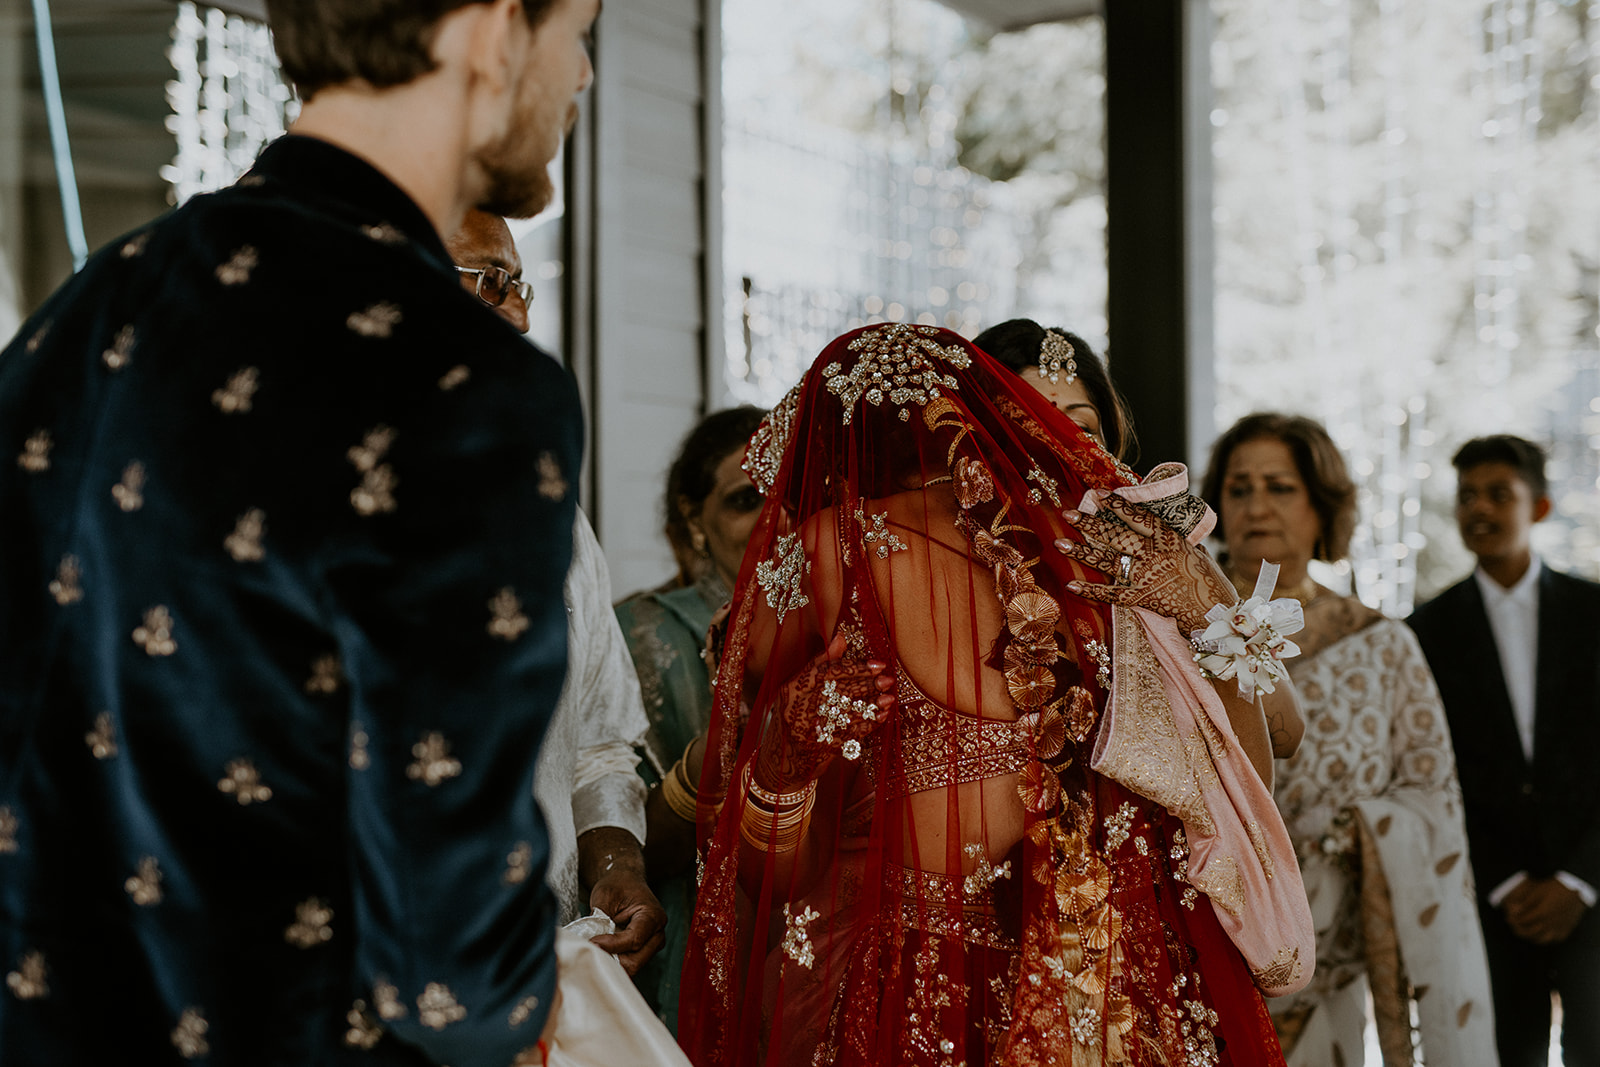 Hindu Wedding Photographer Vancouver